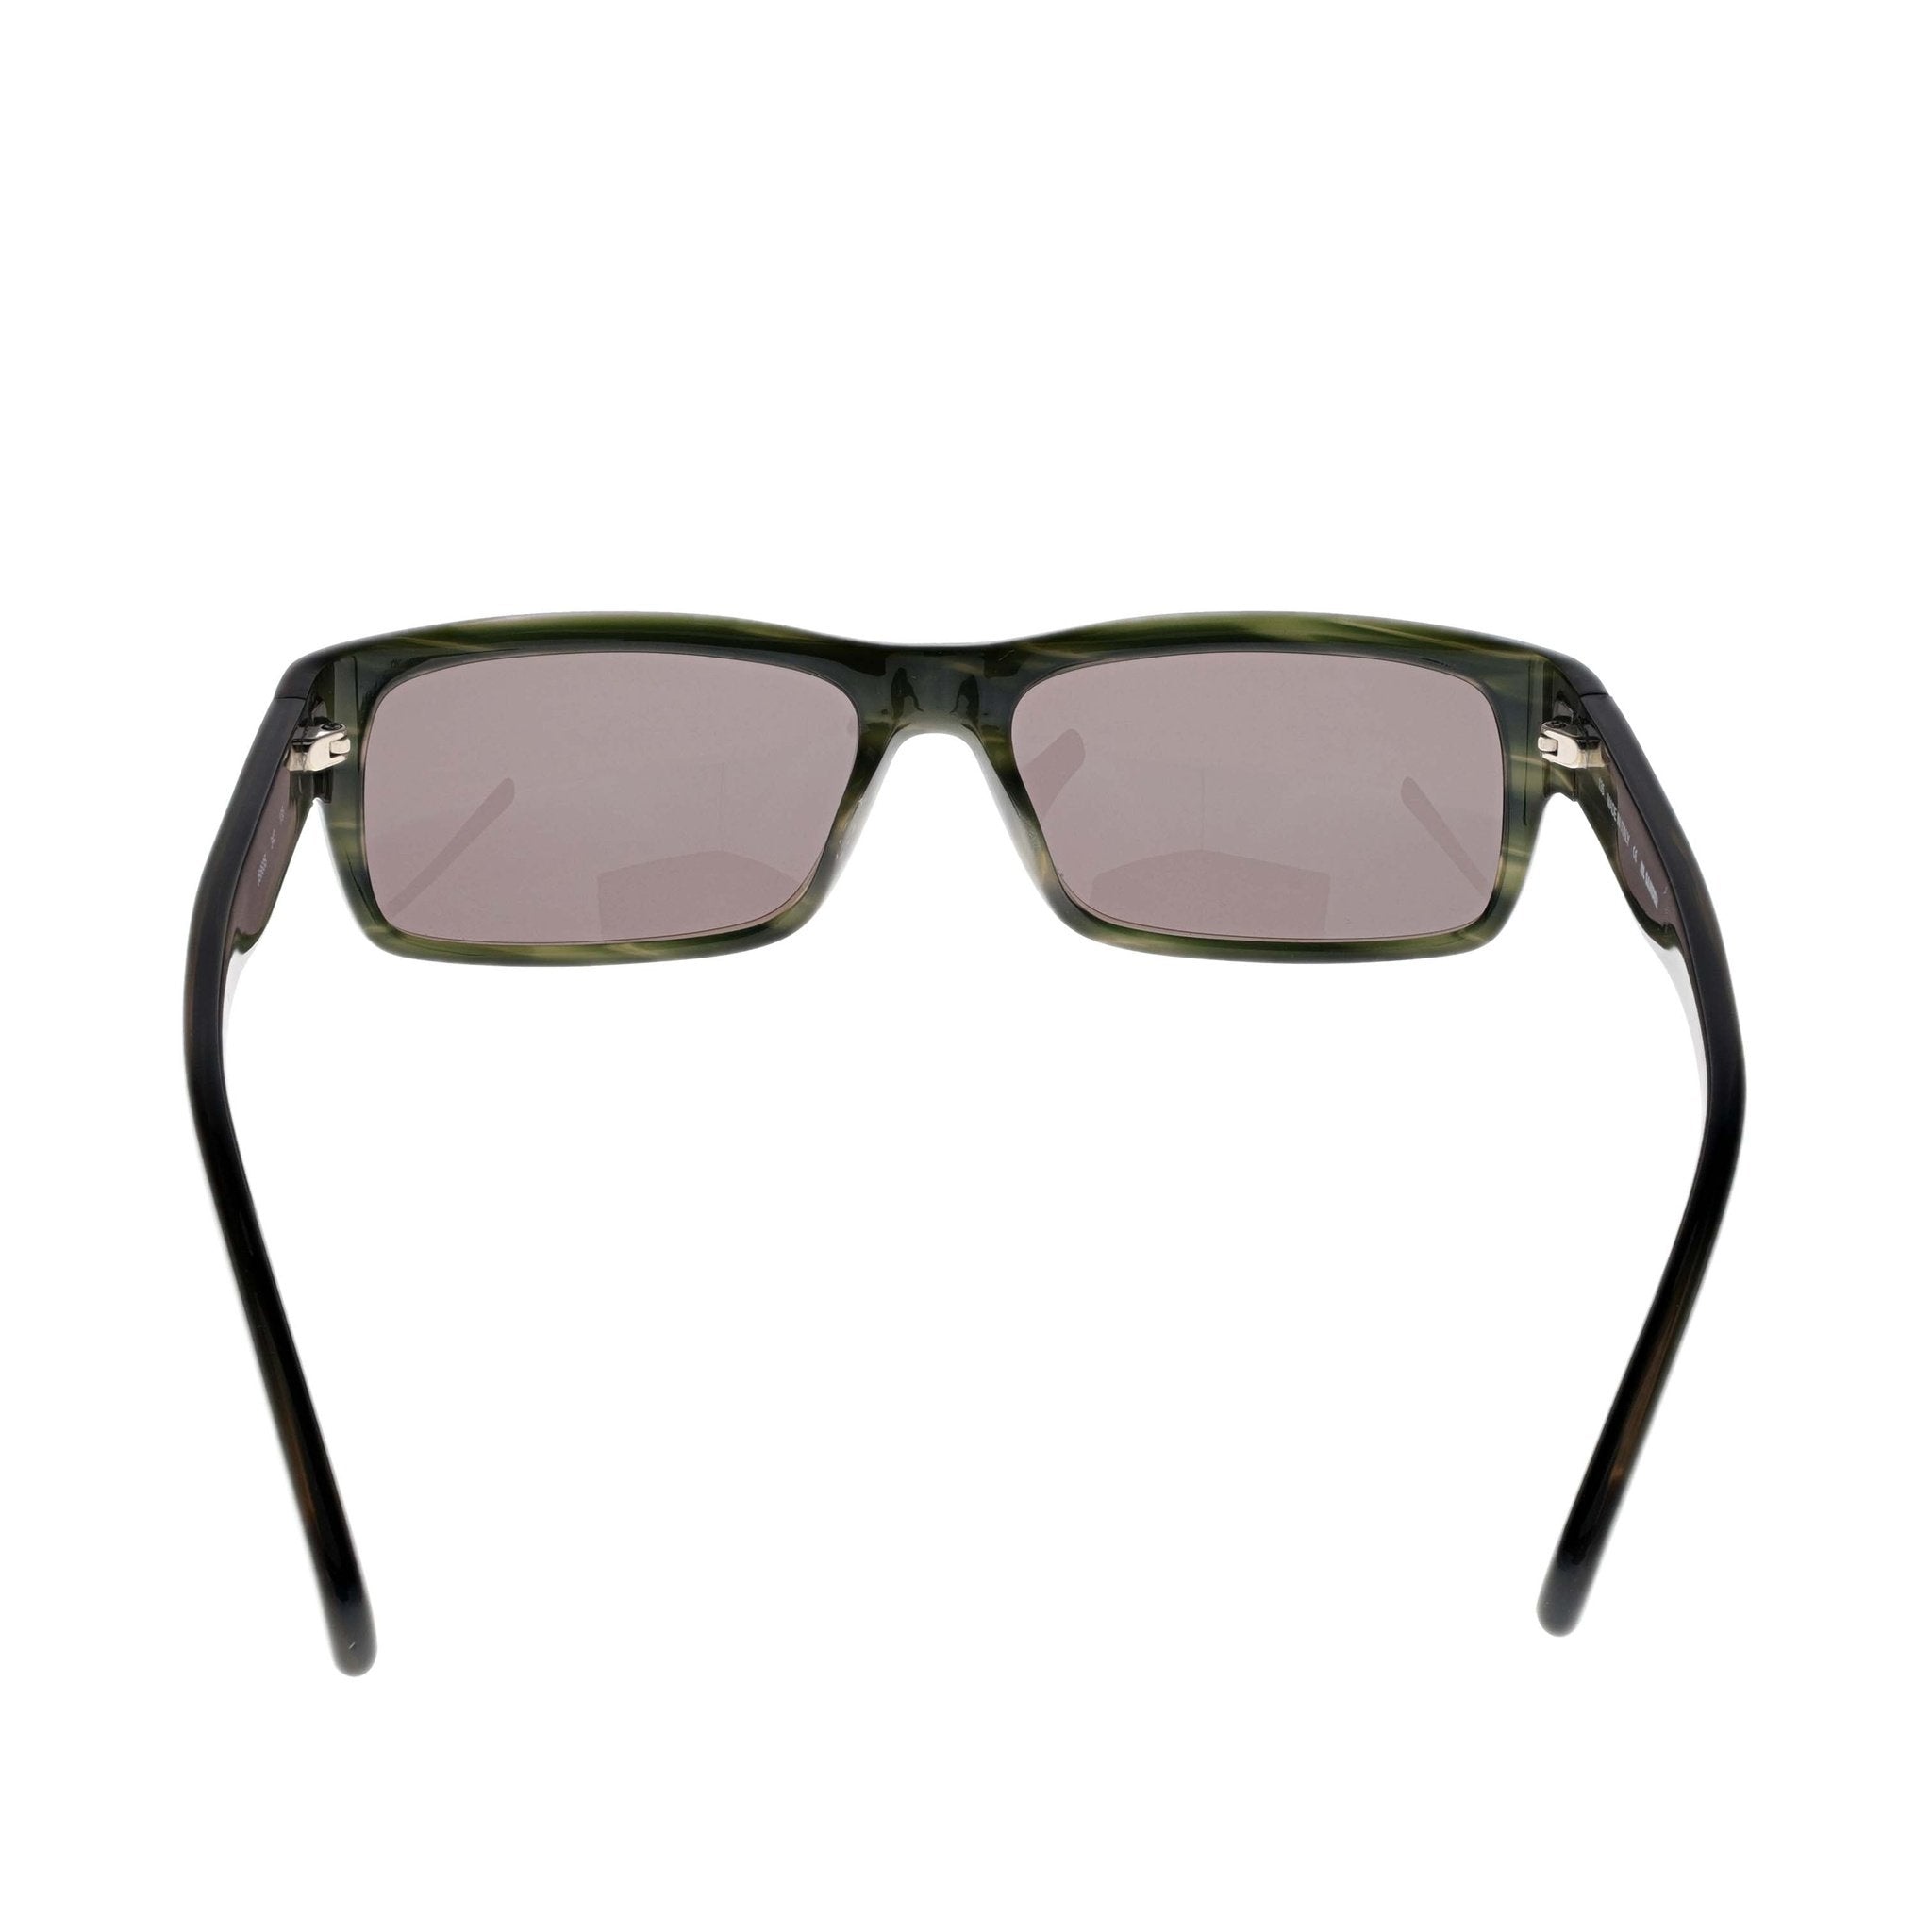 Jil Sander Sunglasses - JS663S - Striped Green